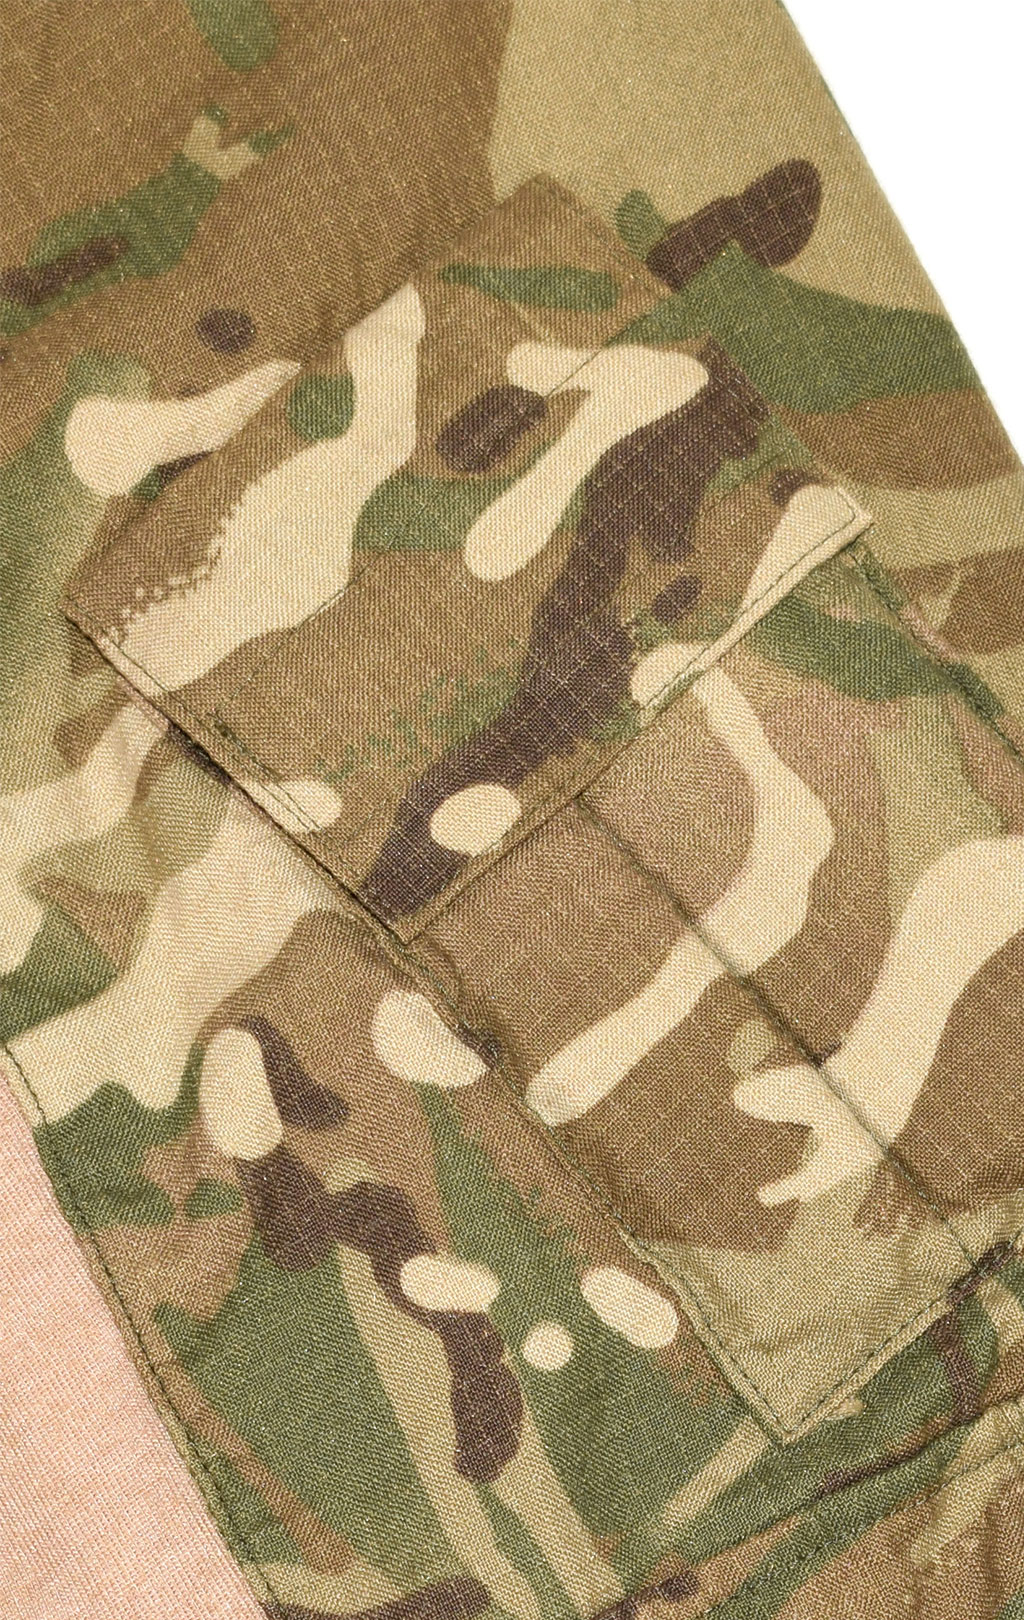 Рубашка Combat Shirt FR облегчённая mtp/coyote б/у Англия